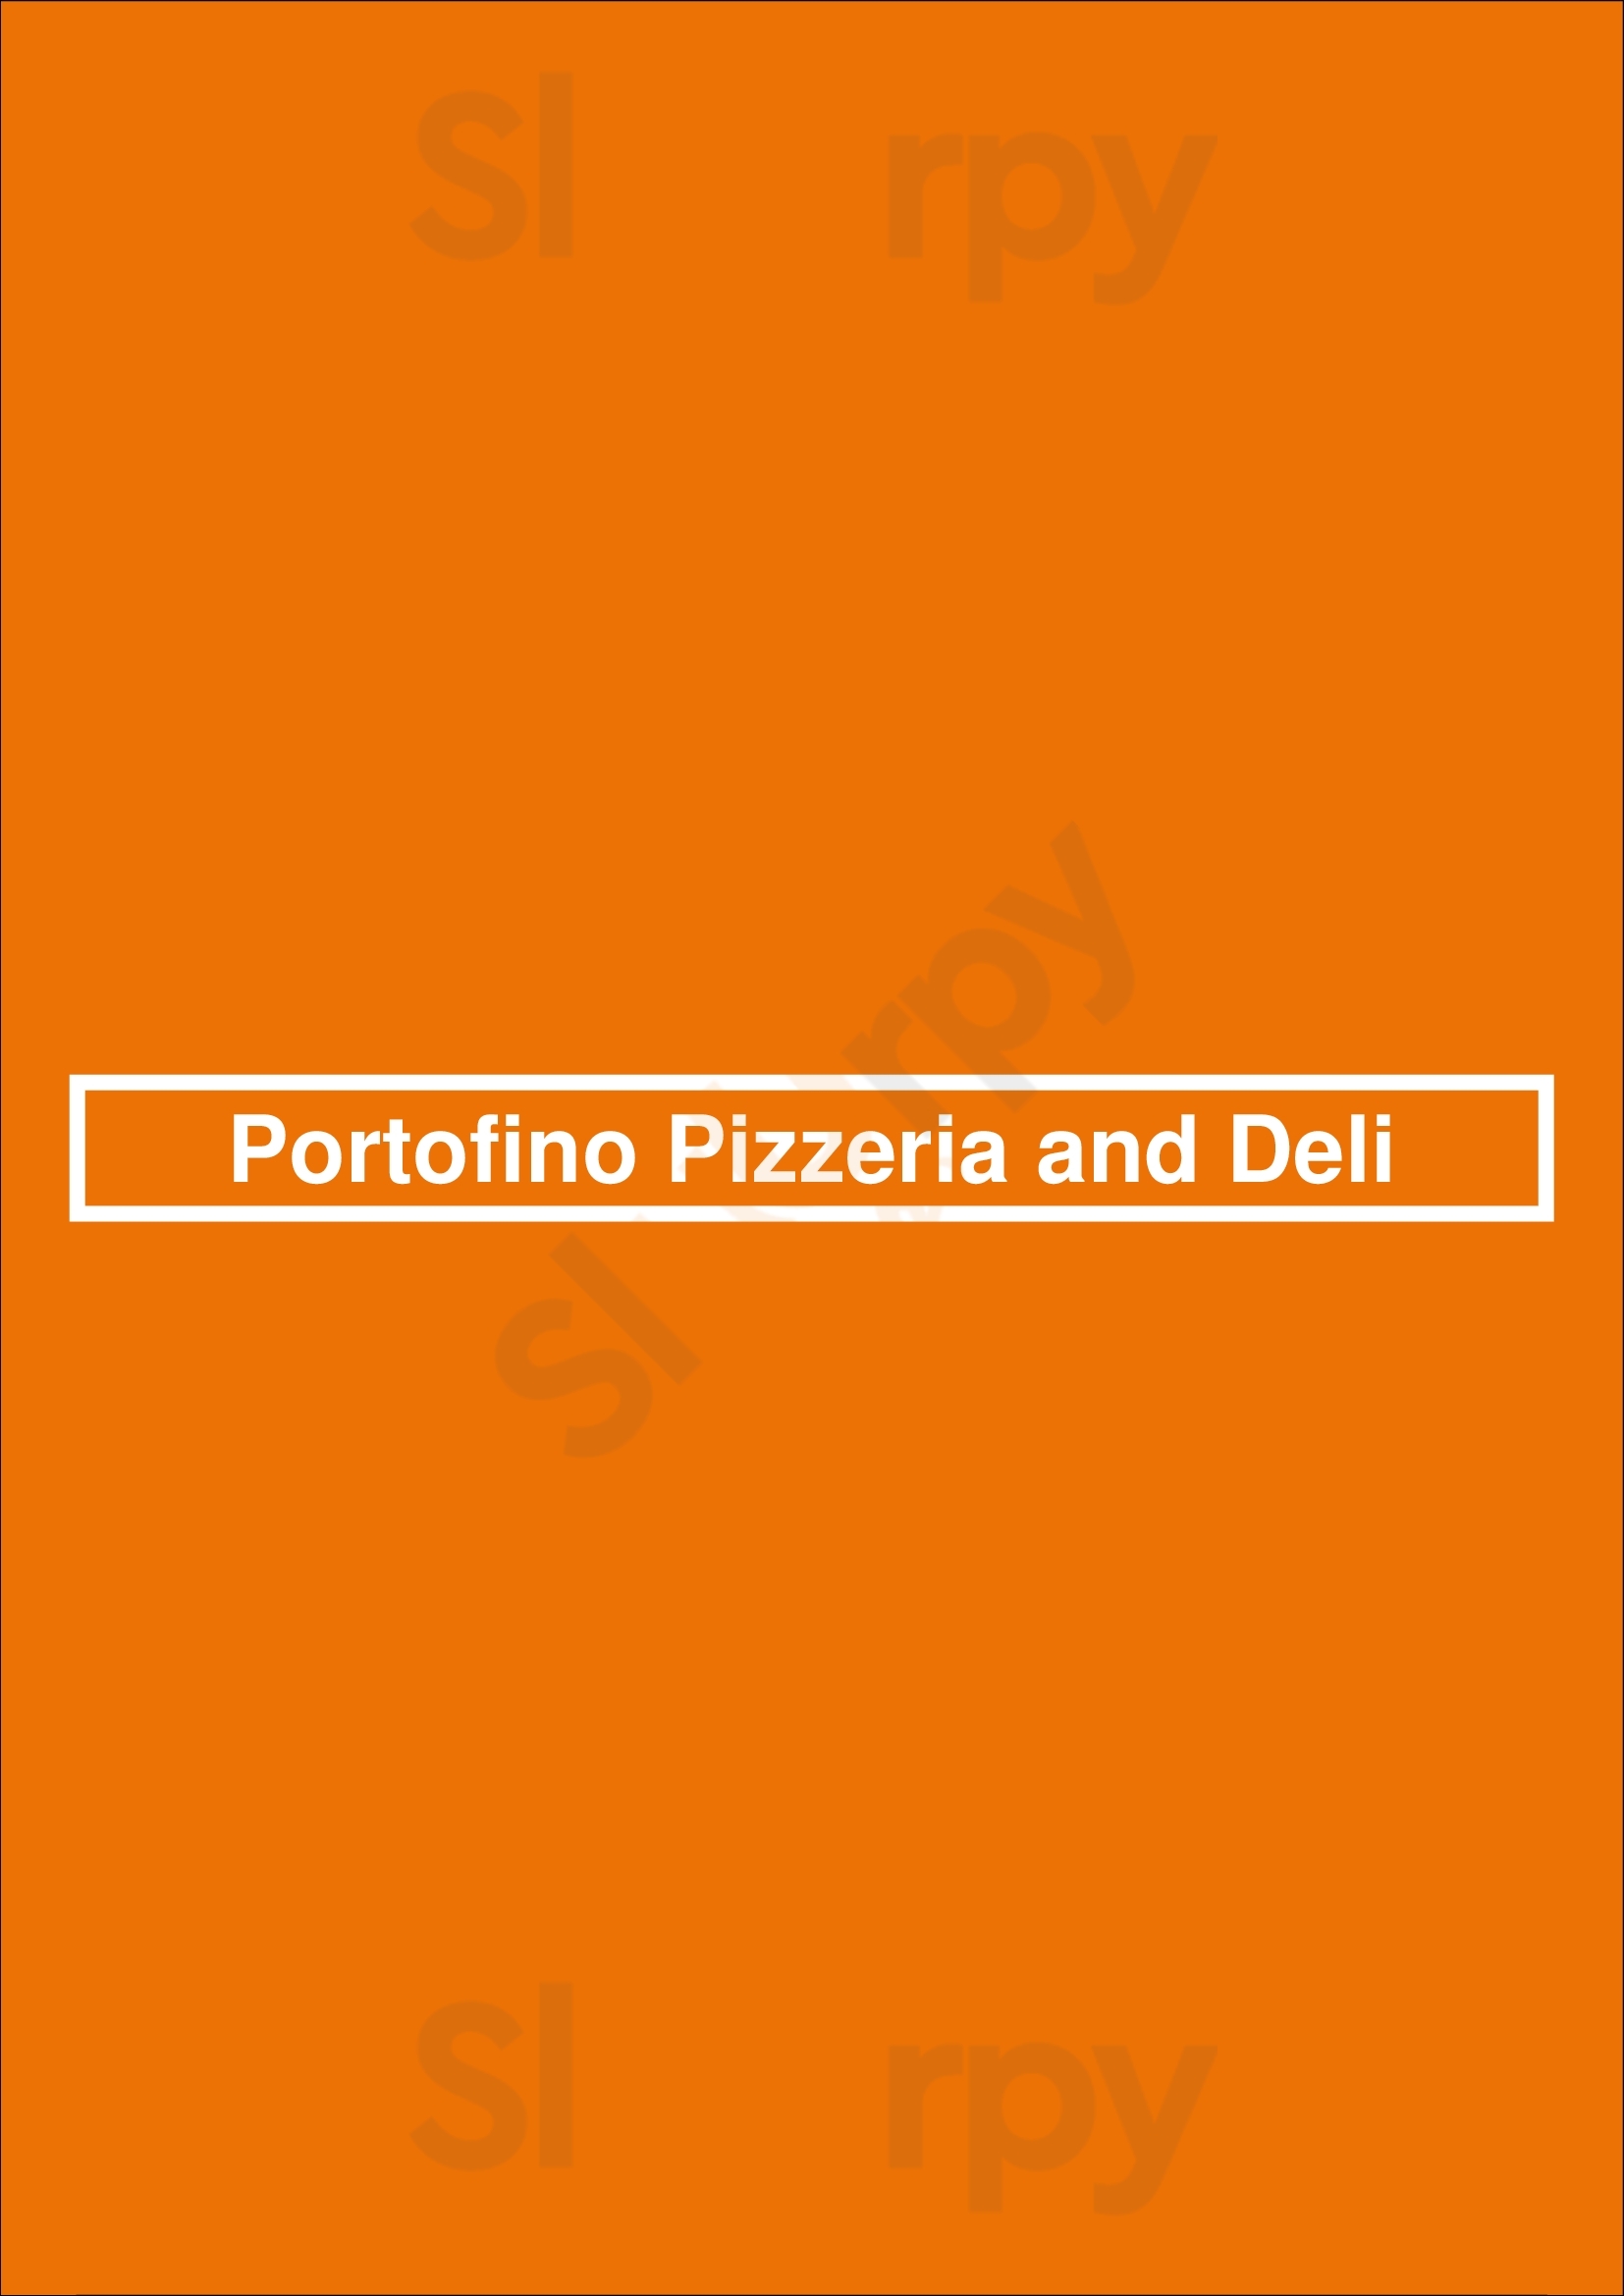 Portofino Pizzeria And Deli Long Beach Menu - 1